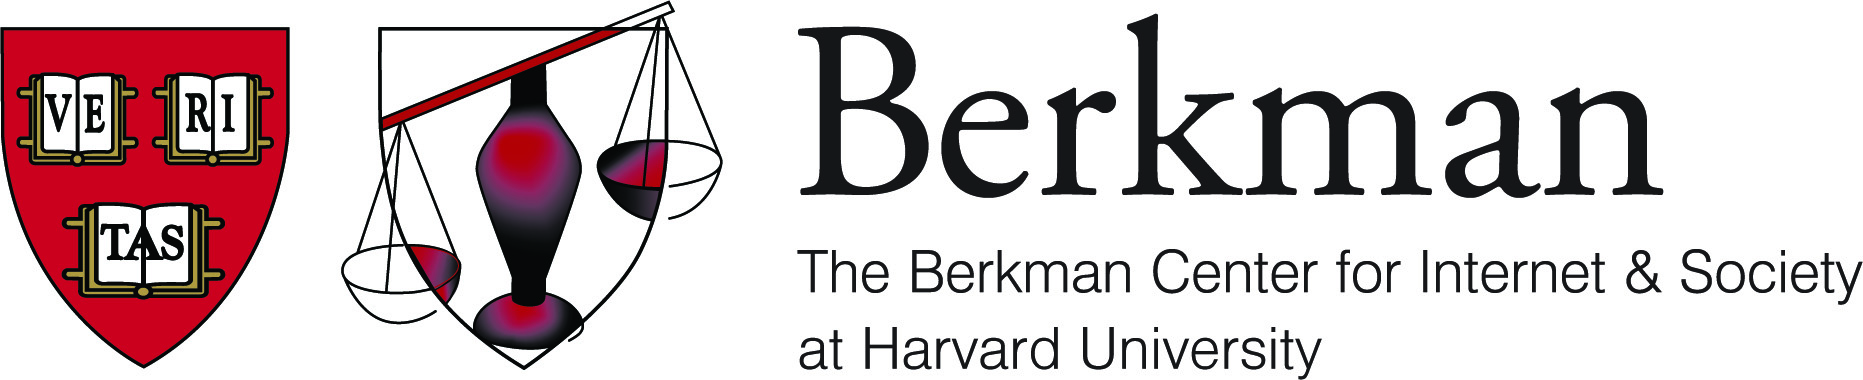 Berkman Logo.jpg